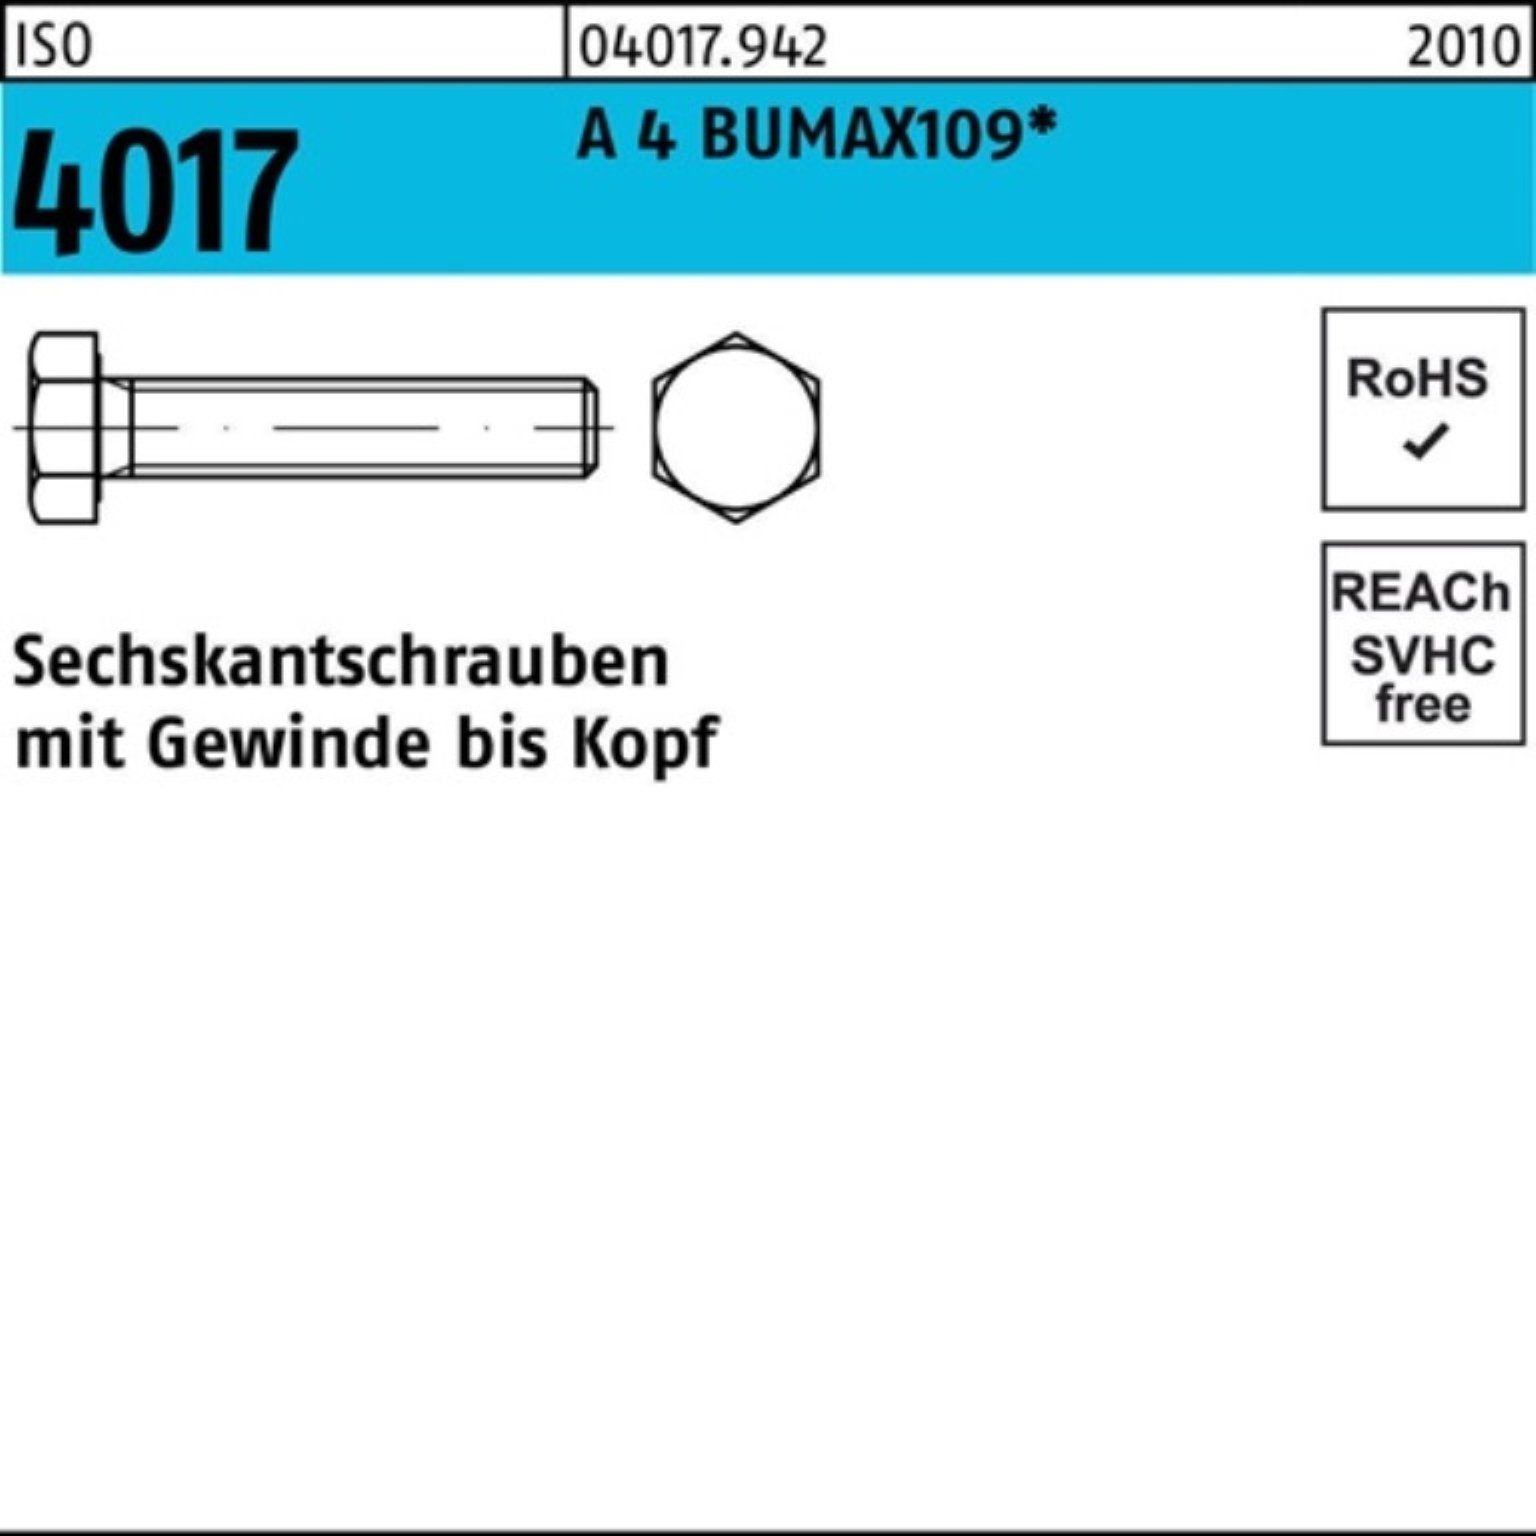 Stüc M6x 20 4 Sechskantschraube 4017 BUMAX109 VG 100 Pack A 100er ISO Bufab Sechskantschraube